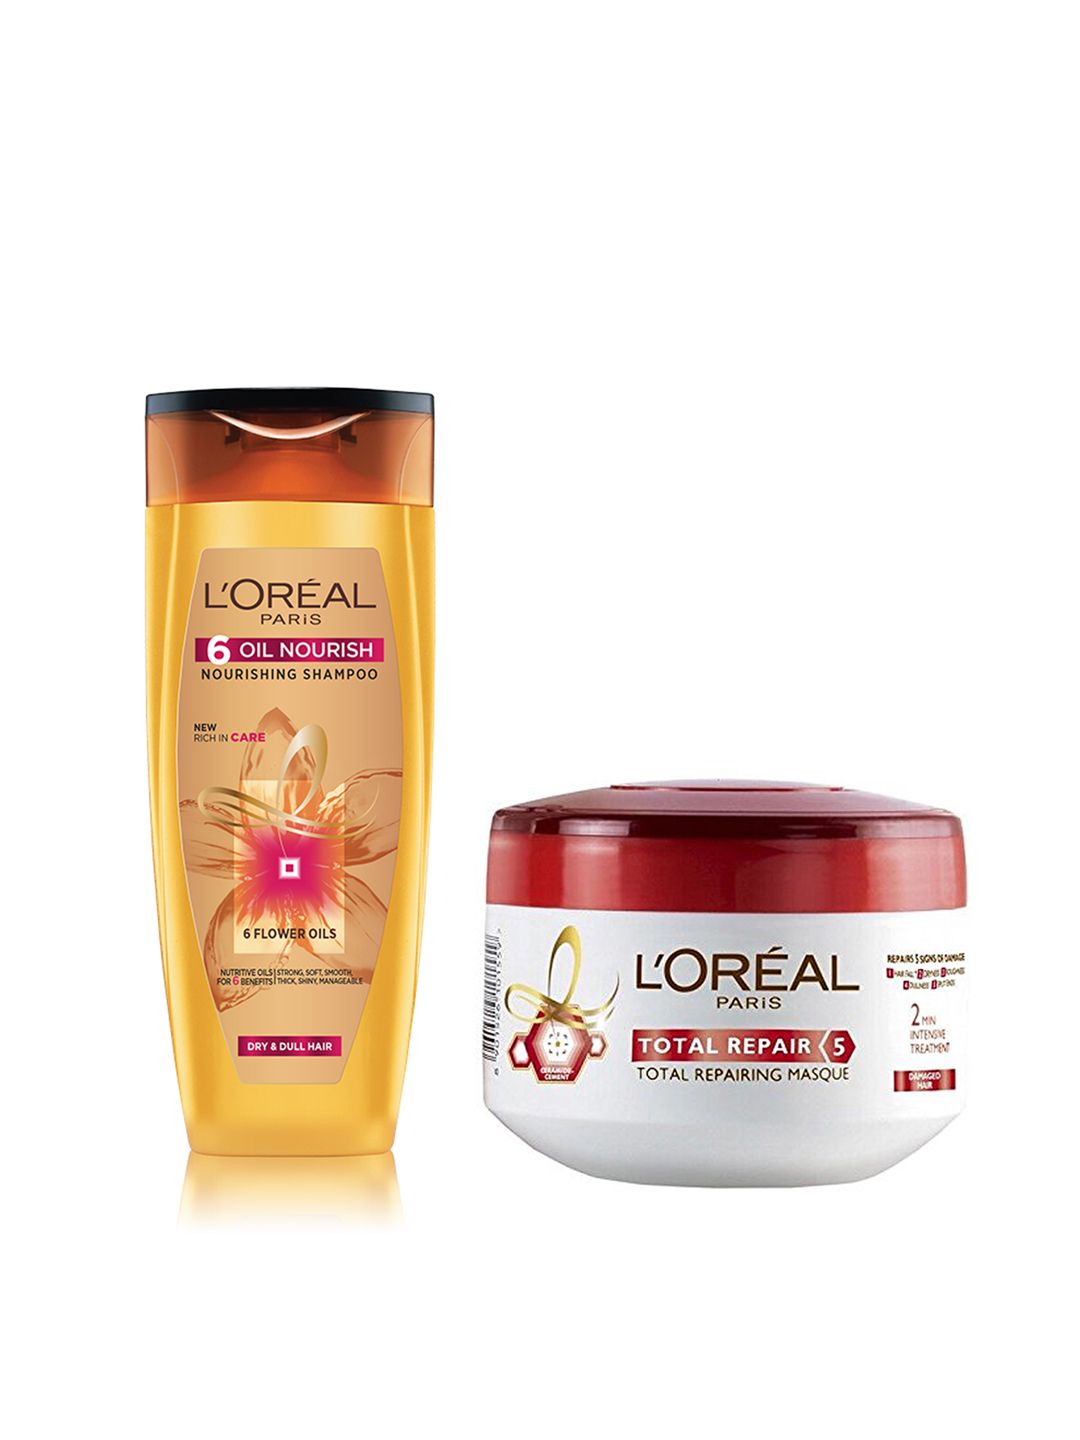 LOreal Paris Set of 6 Oil Nourish Sustainable Shampoo & Total Repair 5 Hair Masque Price in India